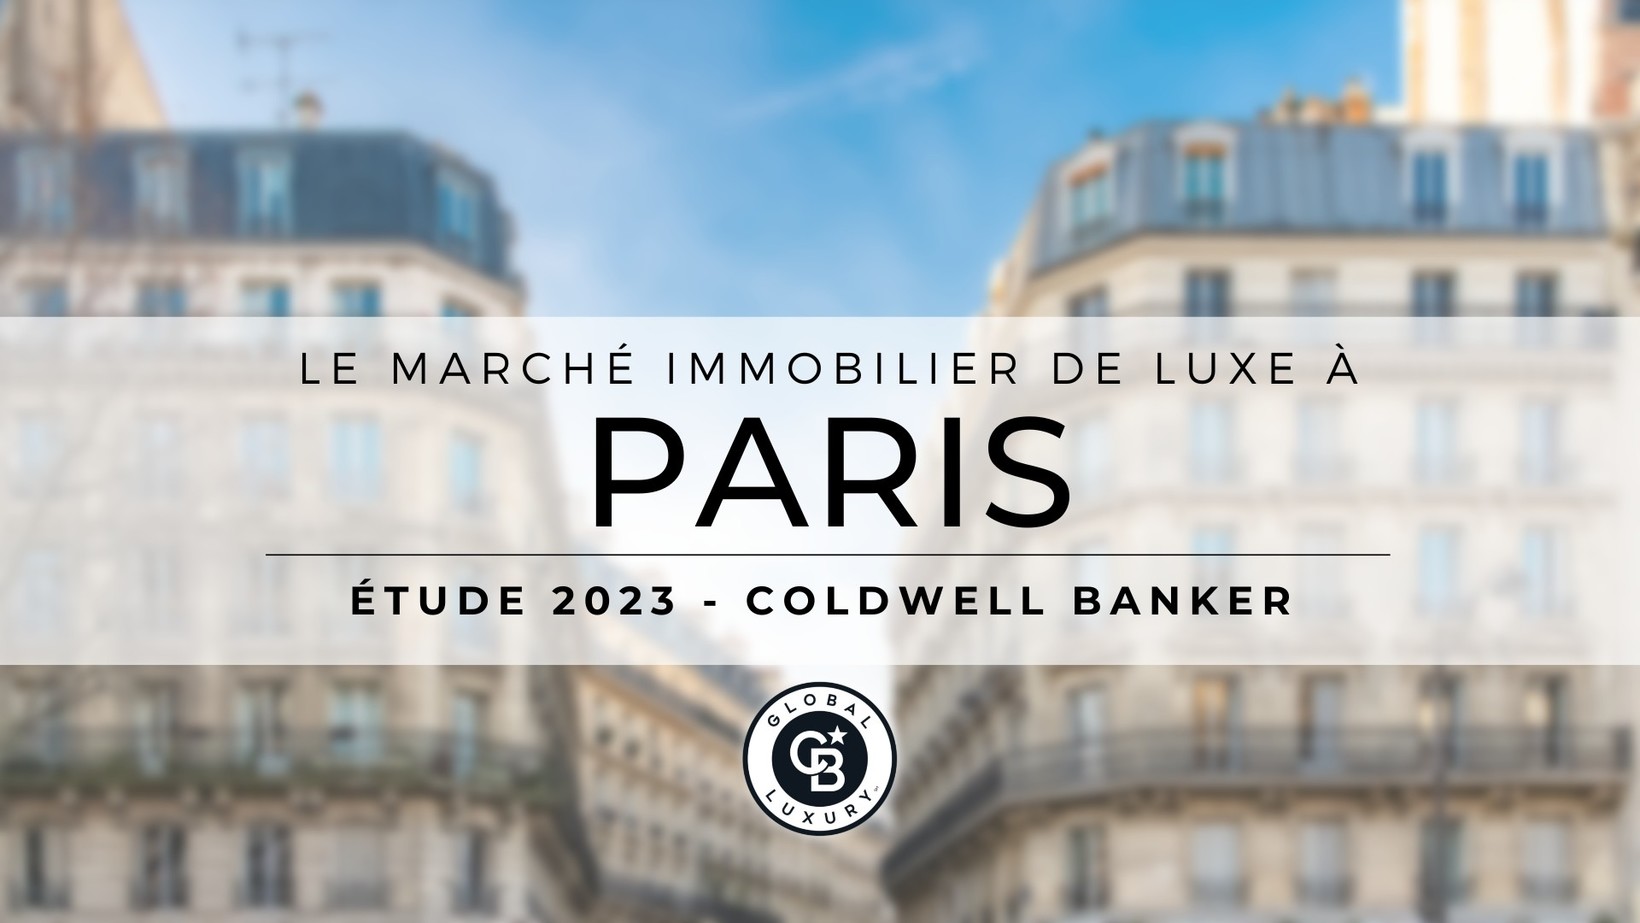 Le marché immobilier de luxe à Paris